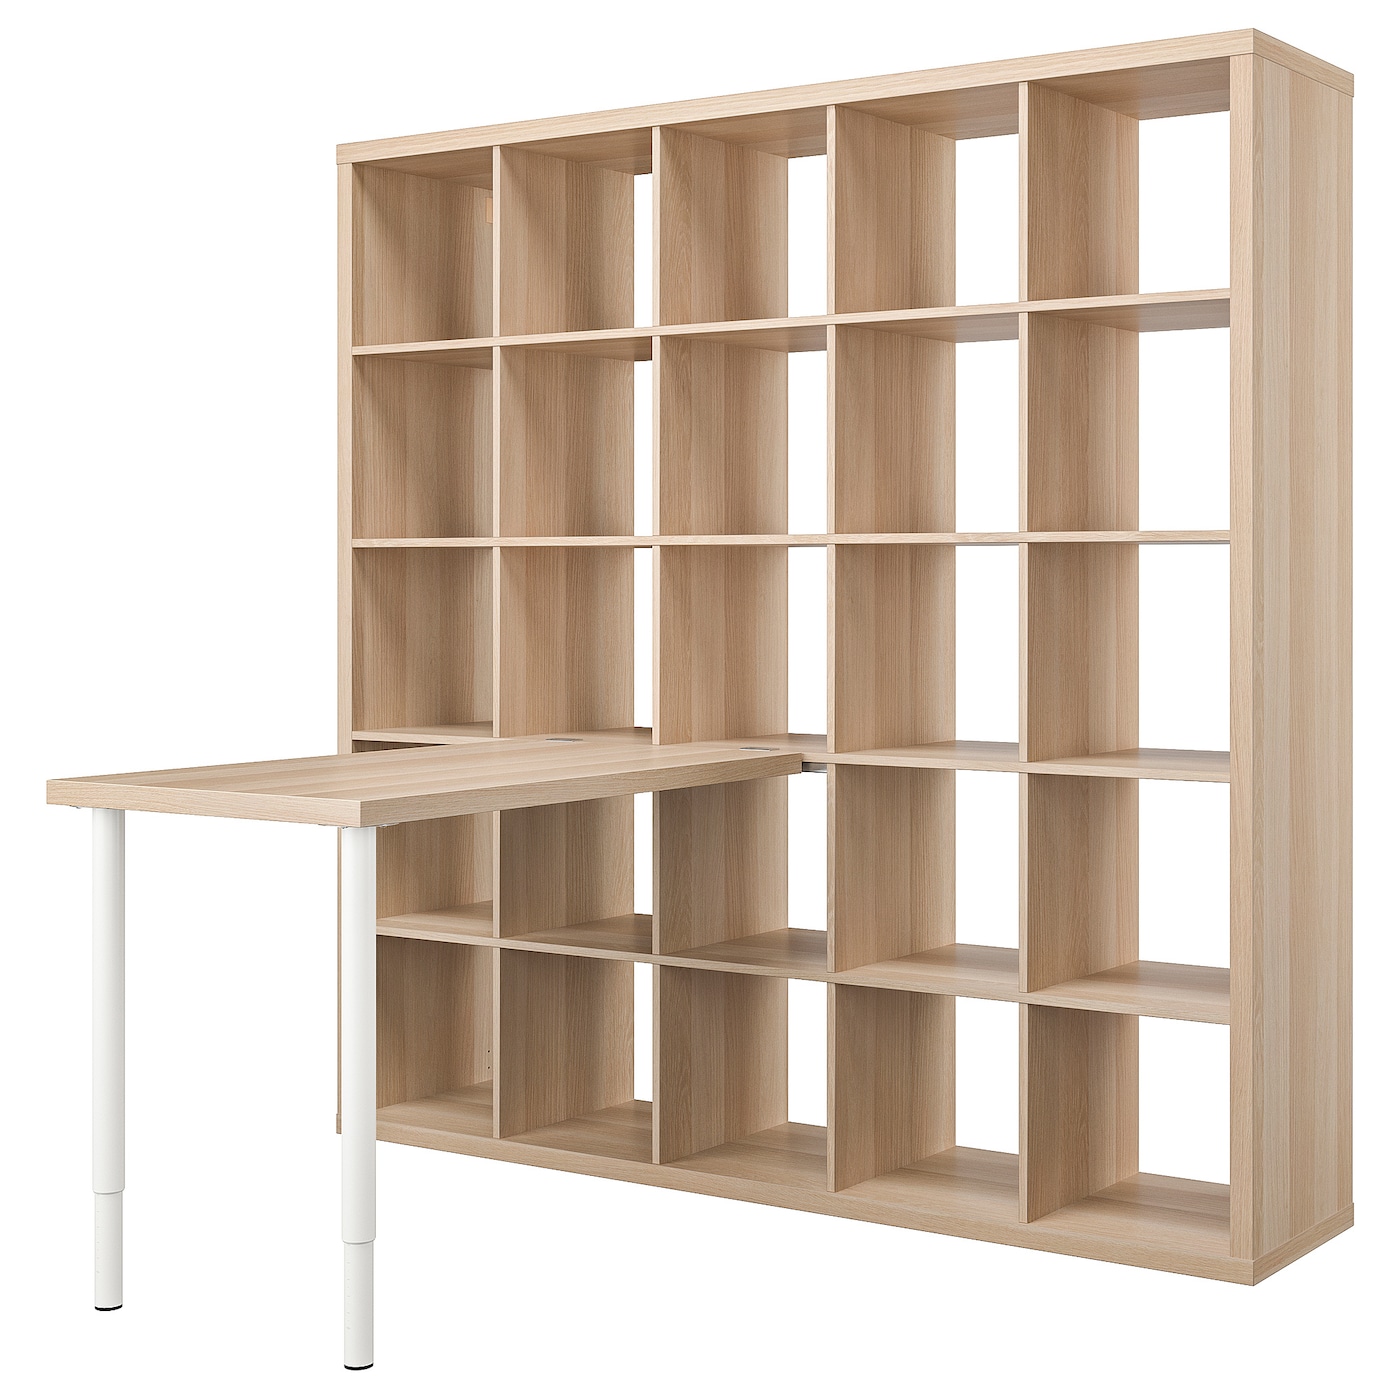 Письменный стол - KALLAX / LINNMON IKEA/ КАЛЛАКС / ЛИННМОН  ИКЕА,  182 см, под беленый дуб